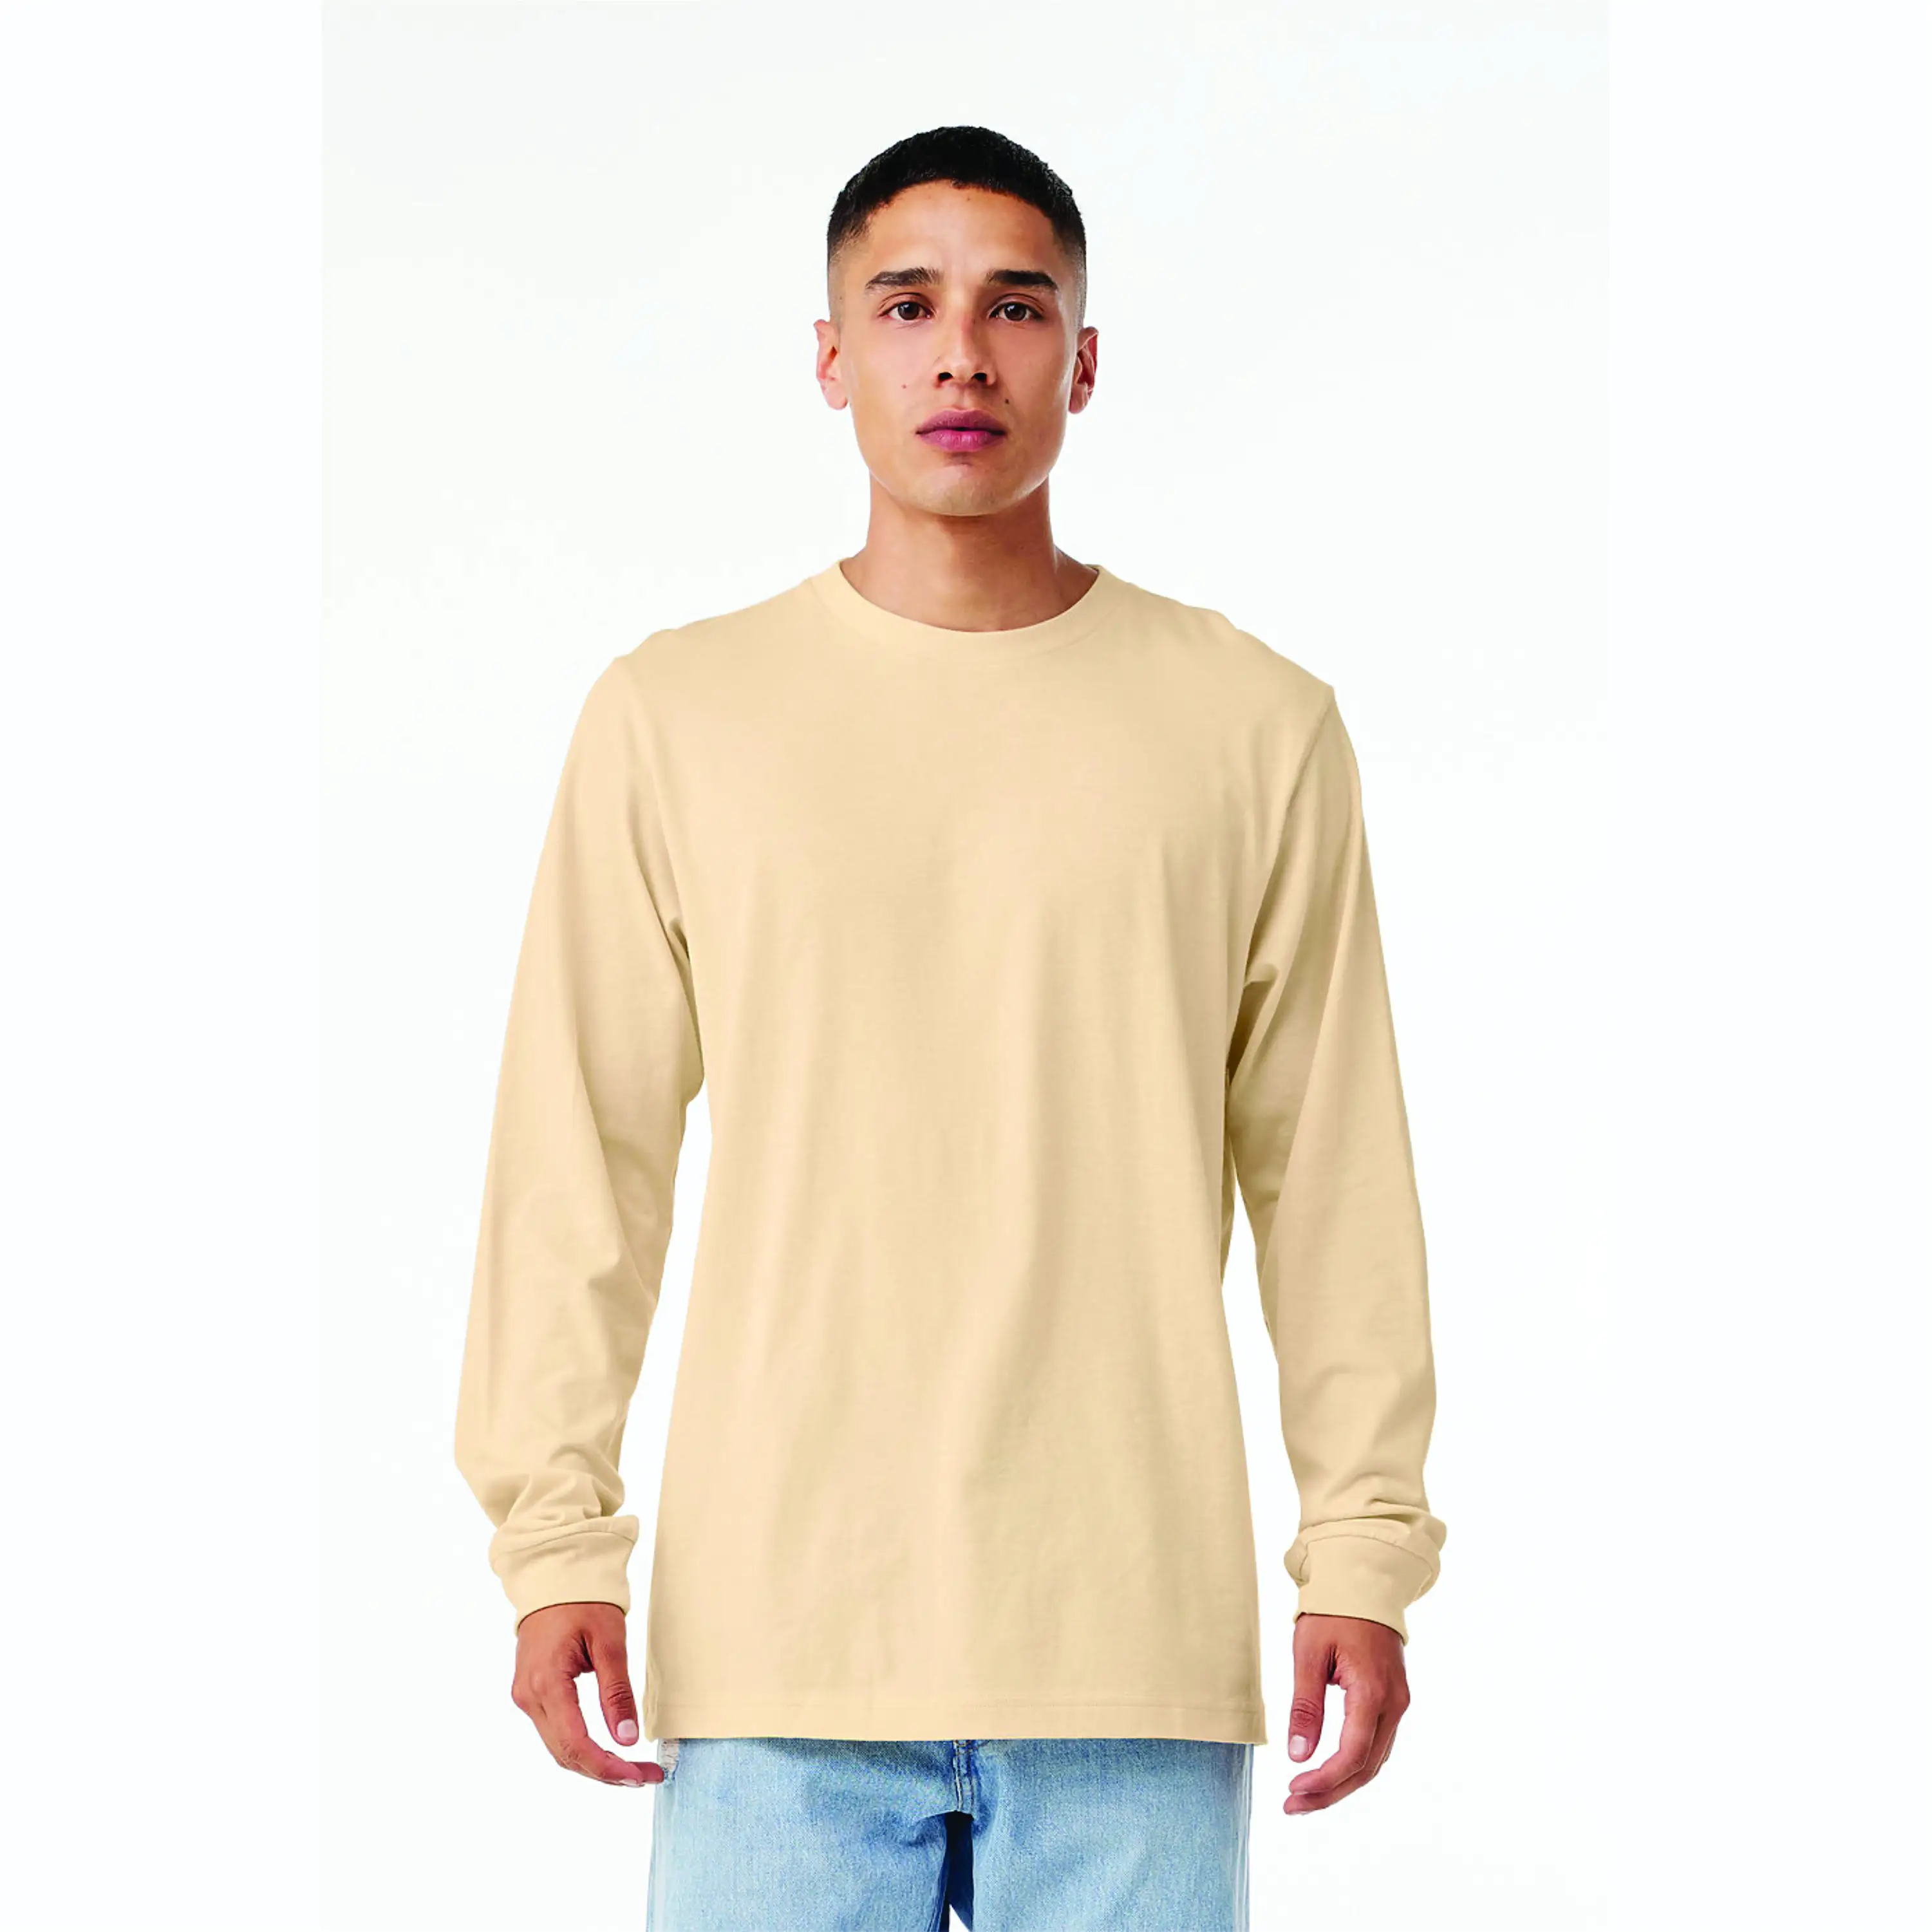 Airlume – T-Shirt manches longues en Jersey de coton peigné et anneau, 100% oz, simple, crème douce, classique, ras du cou, unisexe, 4.2